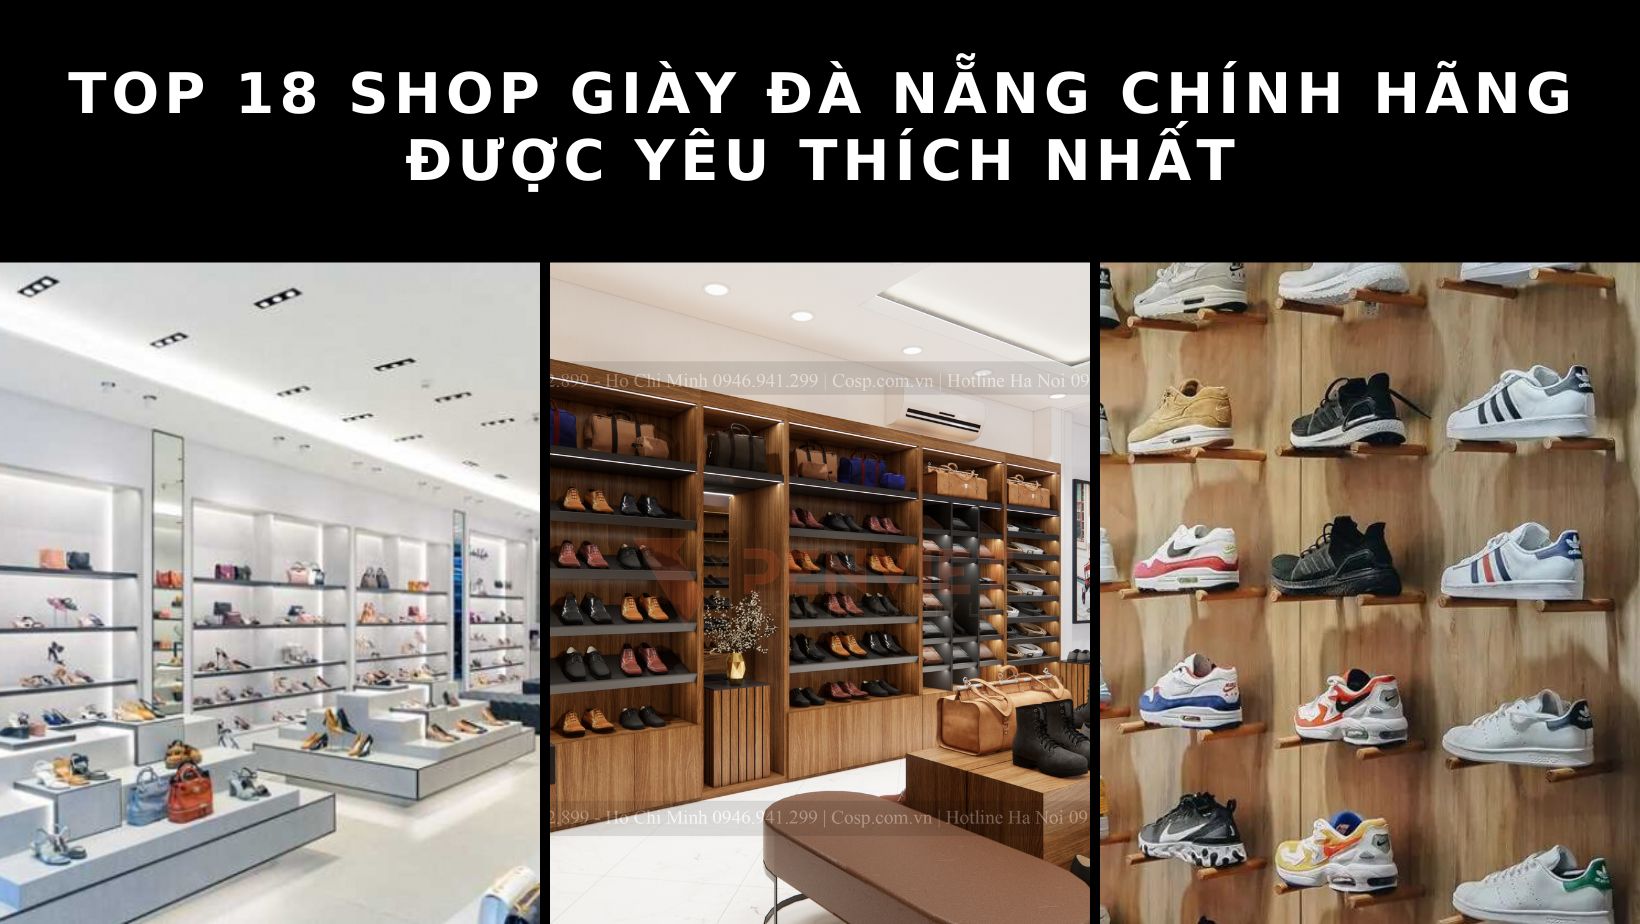 Top 11 shop bán balo ở Đà Nẵng uy tín được nhiều người yêu thích nhất